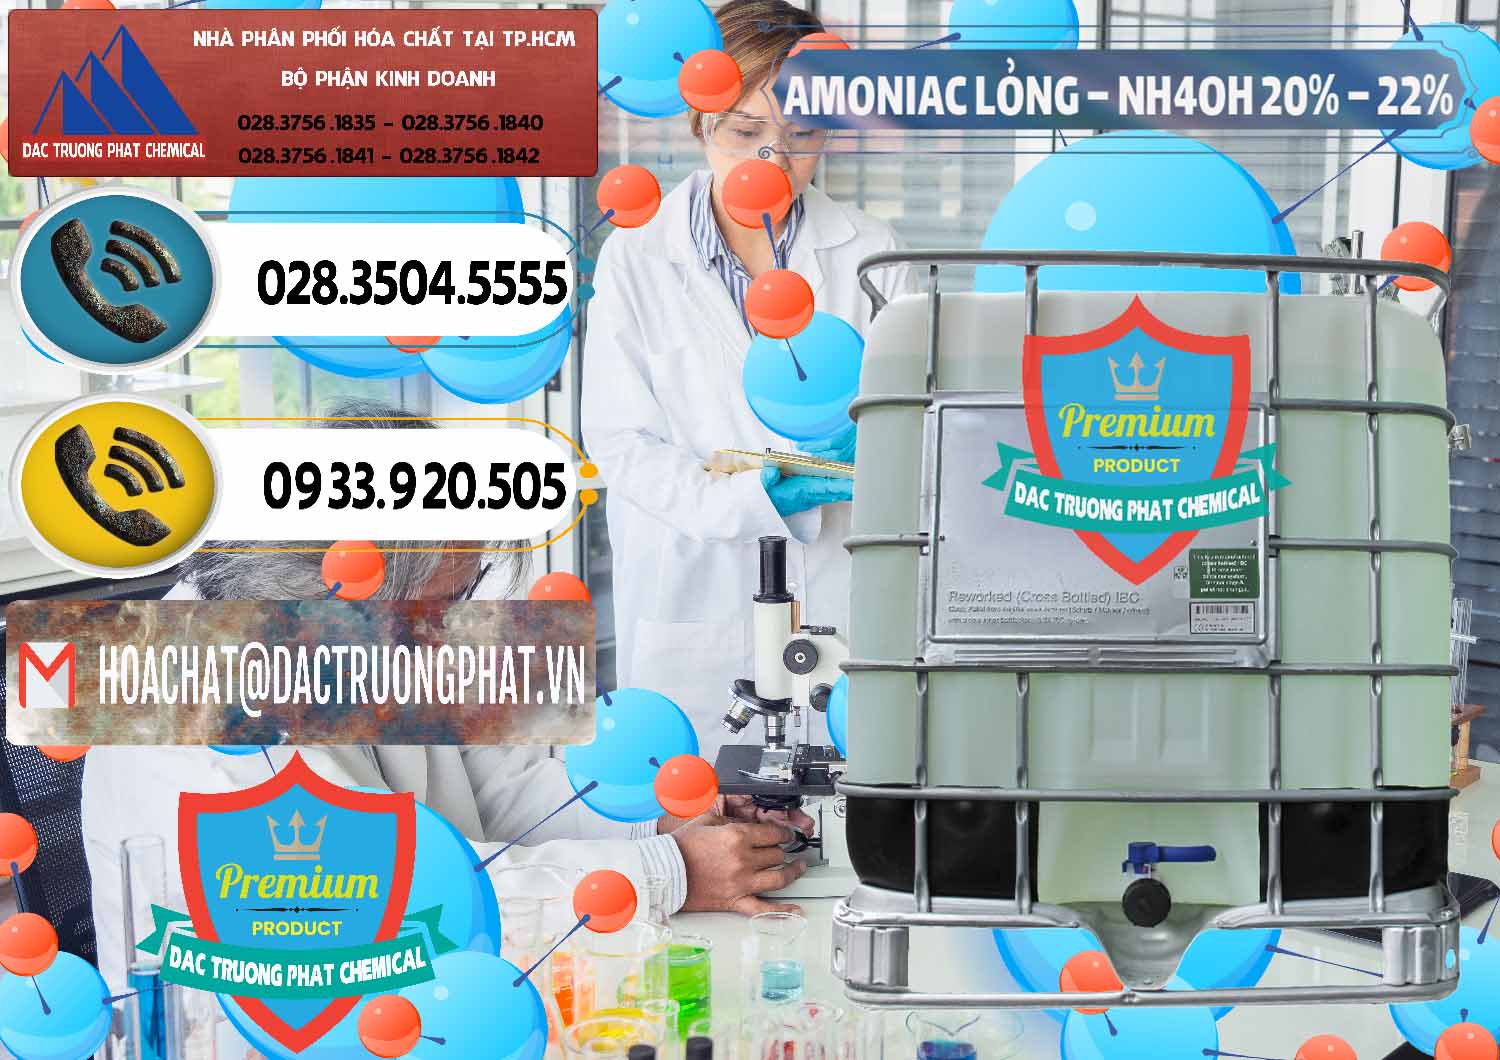 Cty chuyên cung cấp & kinh doanh Amoniac Lỏng – NH4OH 20% – 22% Việt Nam - 0185 - Cty chuyên kinh doanh - bán hóa chất tại TP.HCM - hoachatdetnhuom.vn